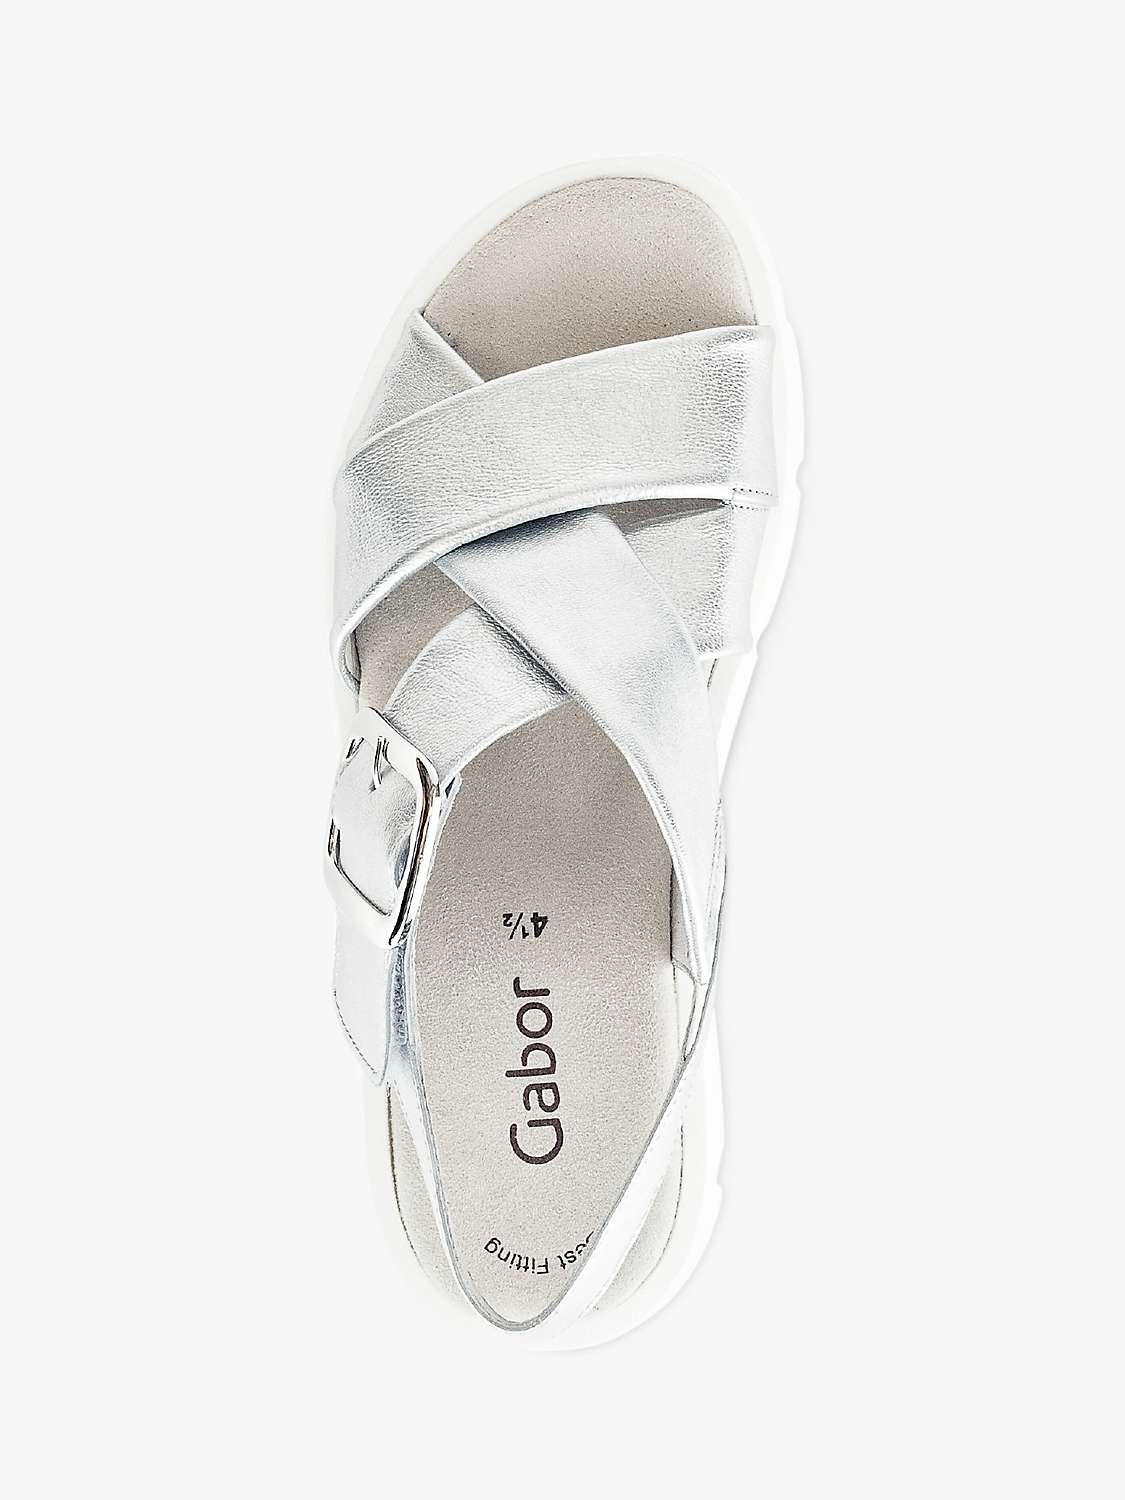 Buy Gabor Daphne Flatform Sandals, Silver Online at johnlewis.com